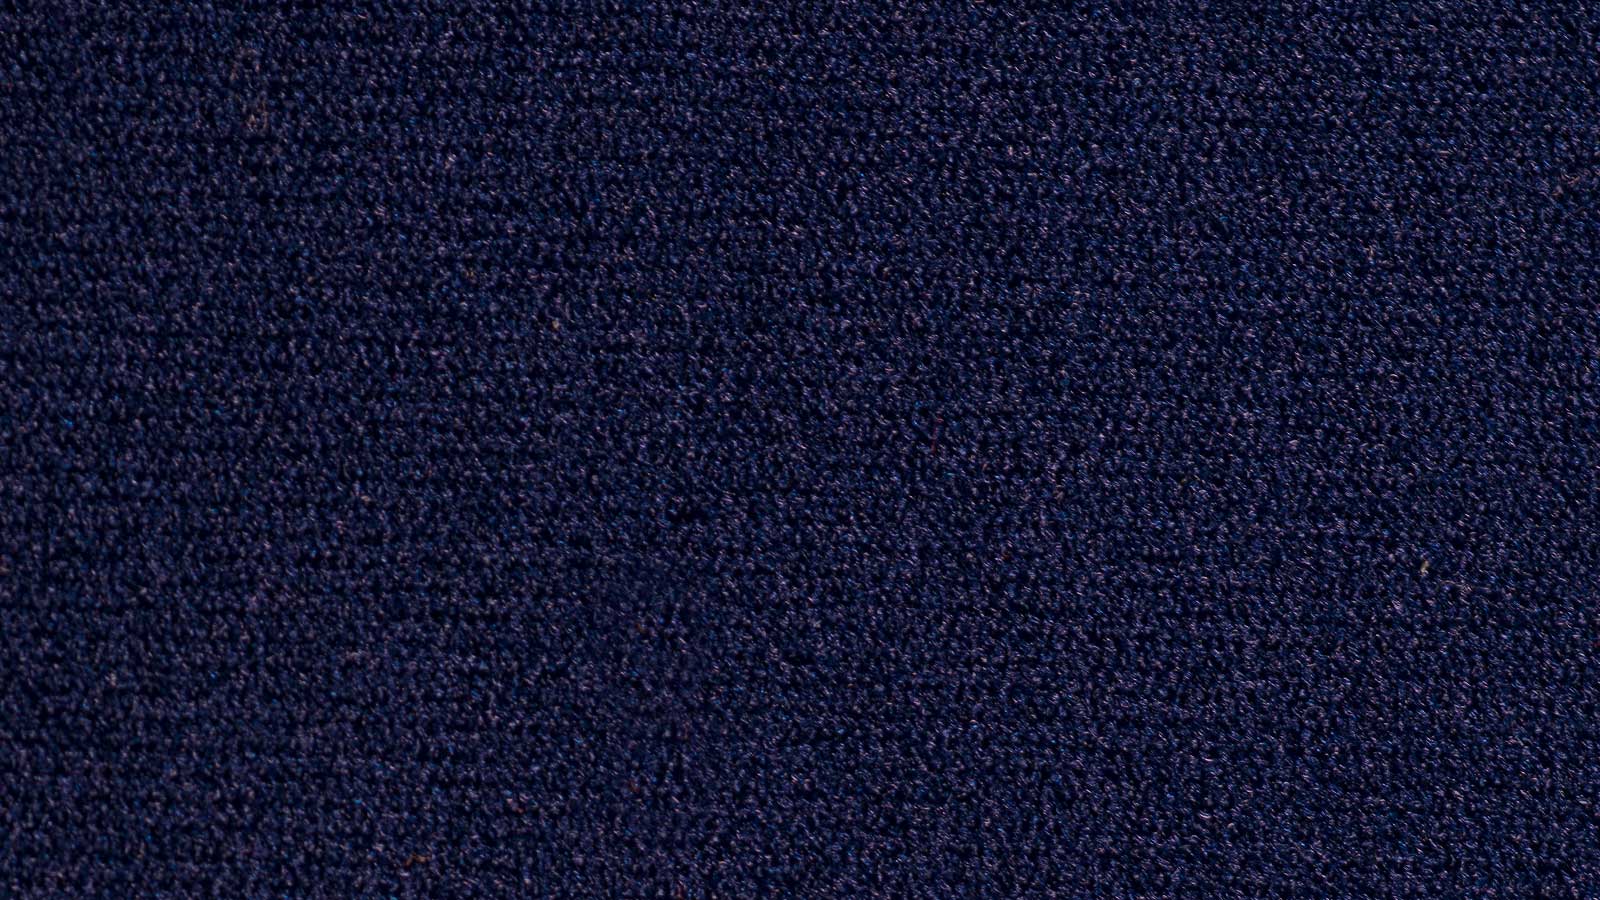 Fontex-empresa-tejidos-barcelona-elastic-155-azul